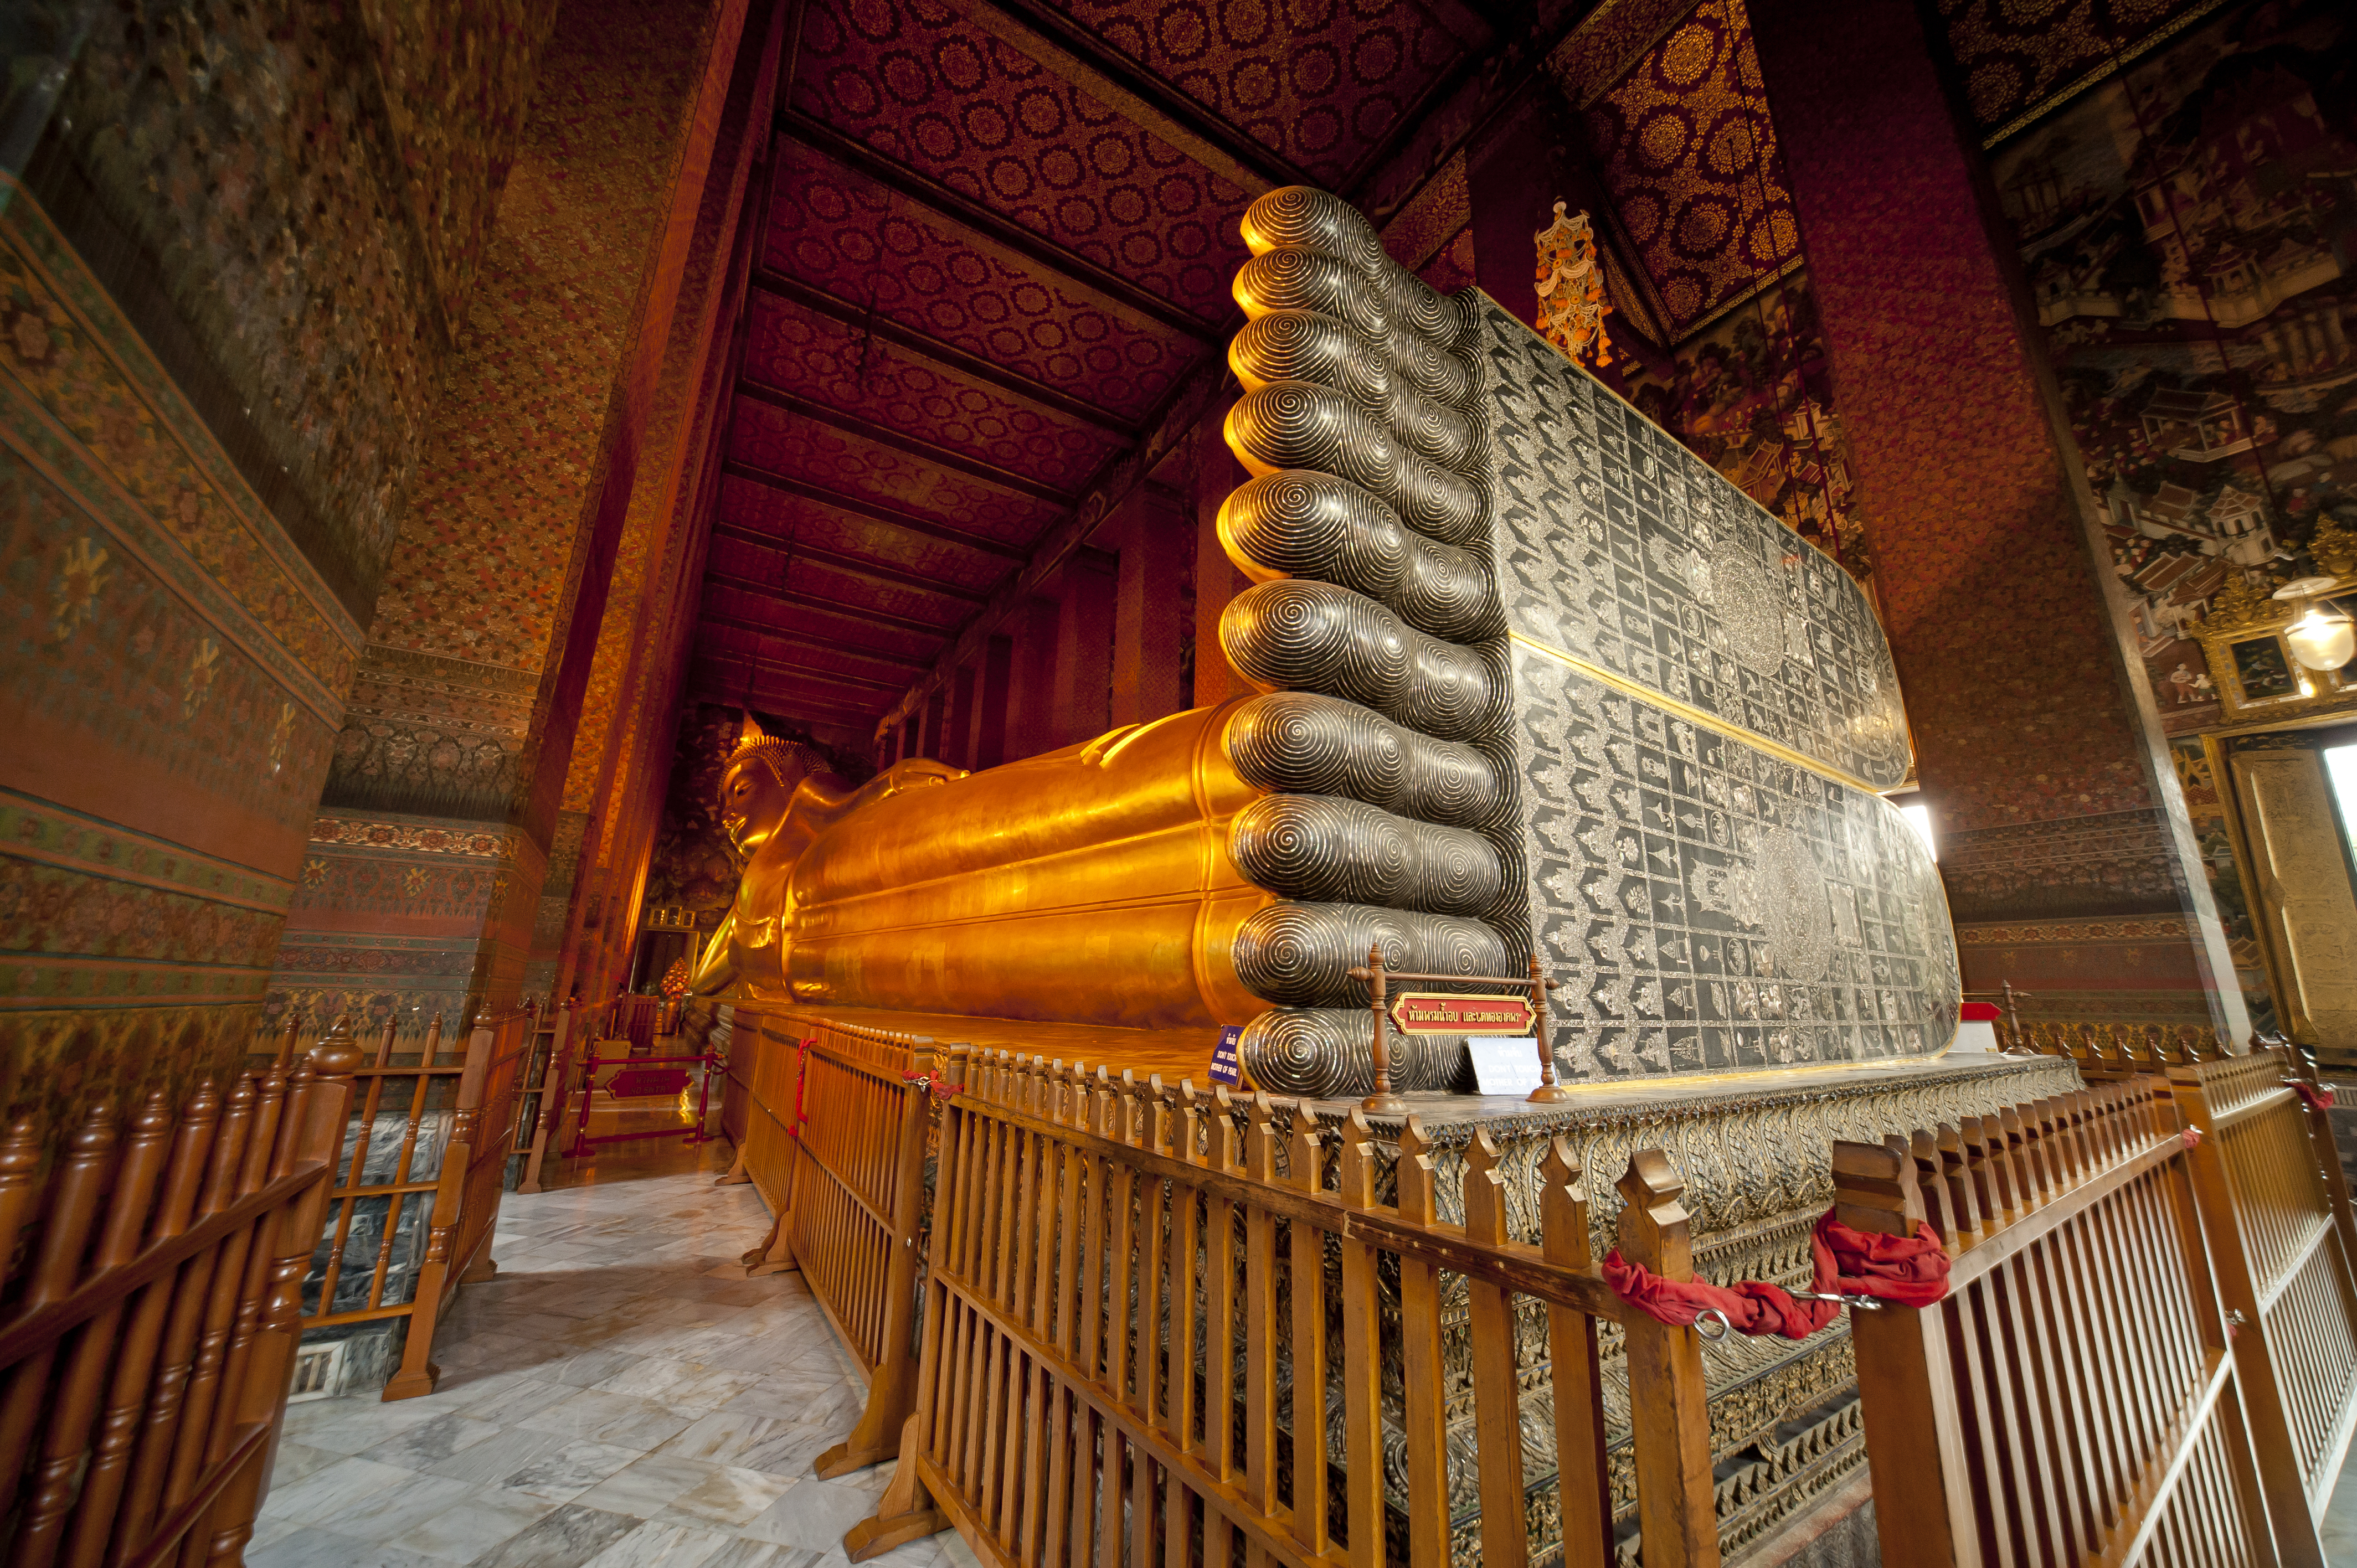 朝割 朝から定番バンコク寺院観光 日本語ガイド付 ランチなし バンコク タイ のお得なオプショナルツアー Hisgo アメリカ